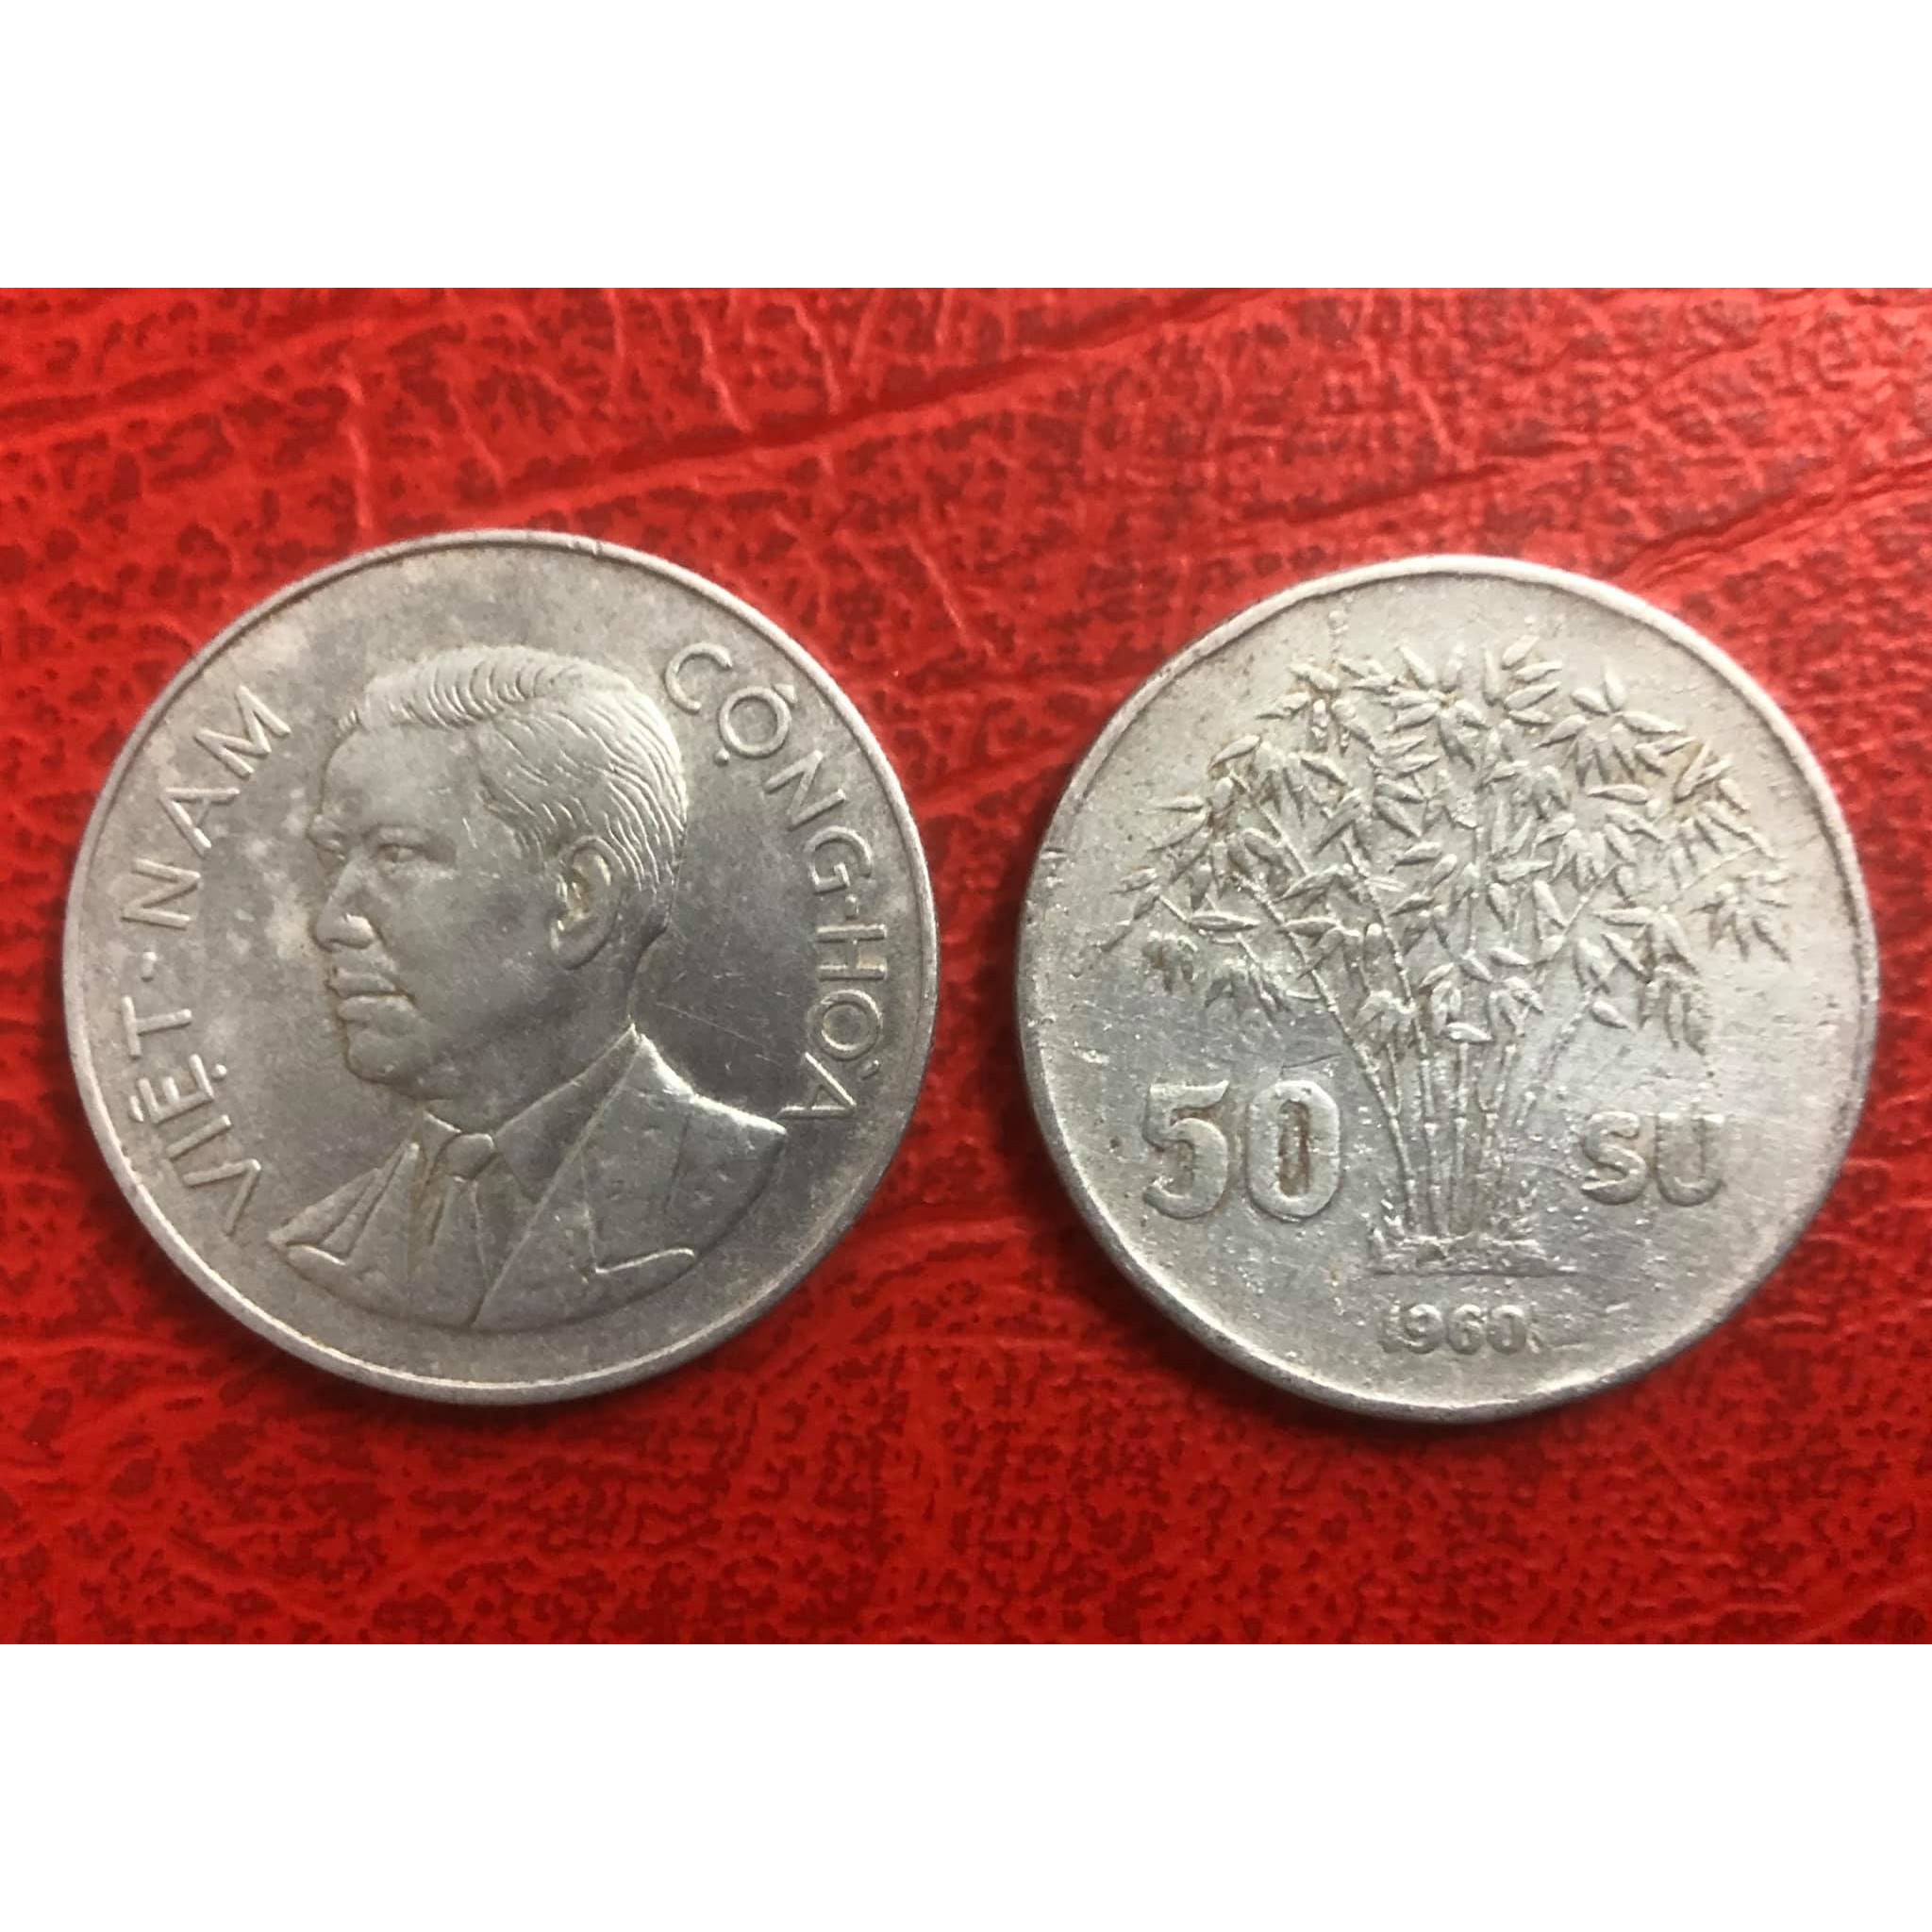 Đồng xu 50 su Tổng thống Ngô Đình Diệm - Bụi trúc, xu Việt Nam xưa sưu tầm